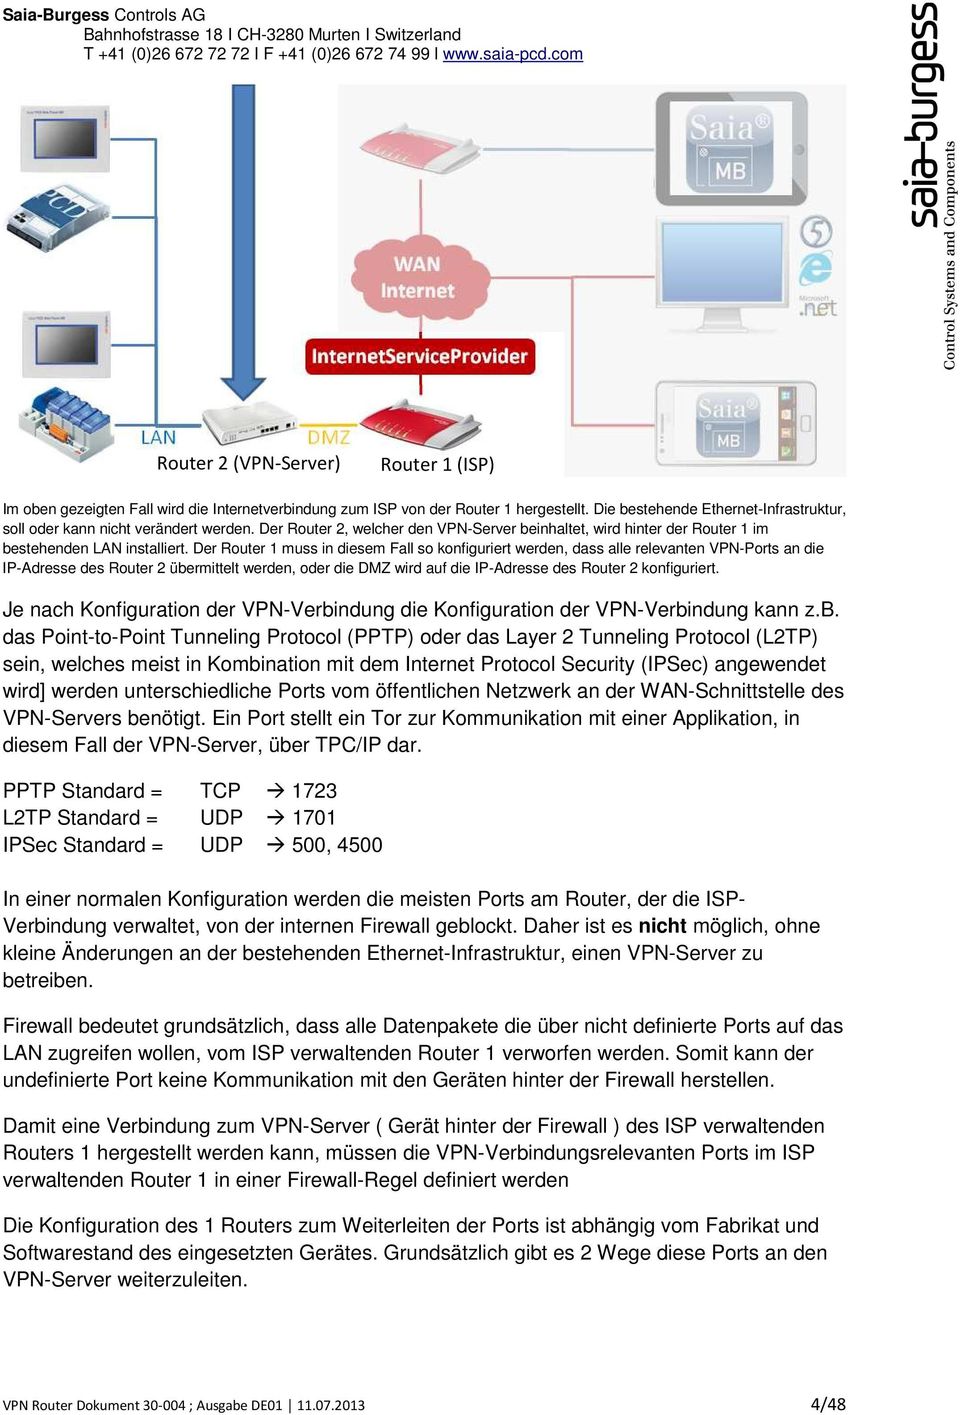 Der Router 1 muss in diesem Fall so konfiguriert werden, dass alle relevanten VPN-Ports an die IP-Adresse des Router 2 übermittelt werden, oder die DMZ wird auf die IP-Adresse des Router 2